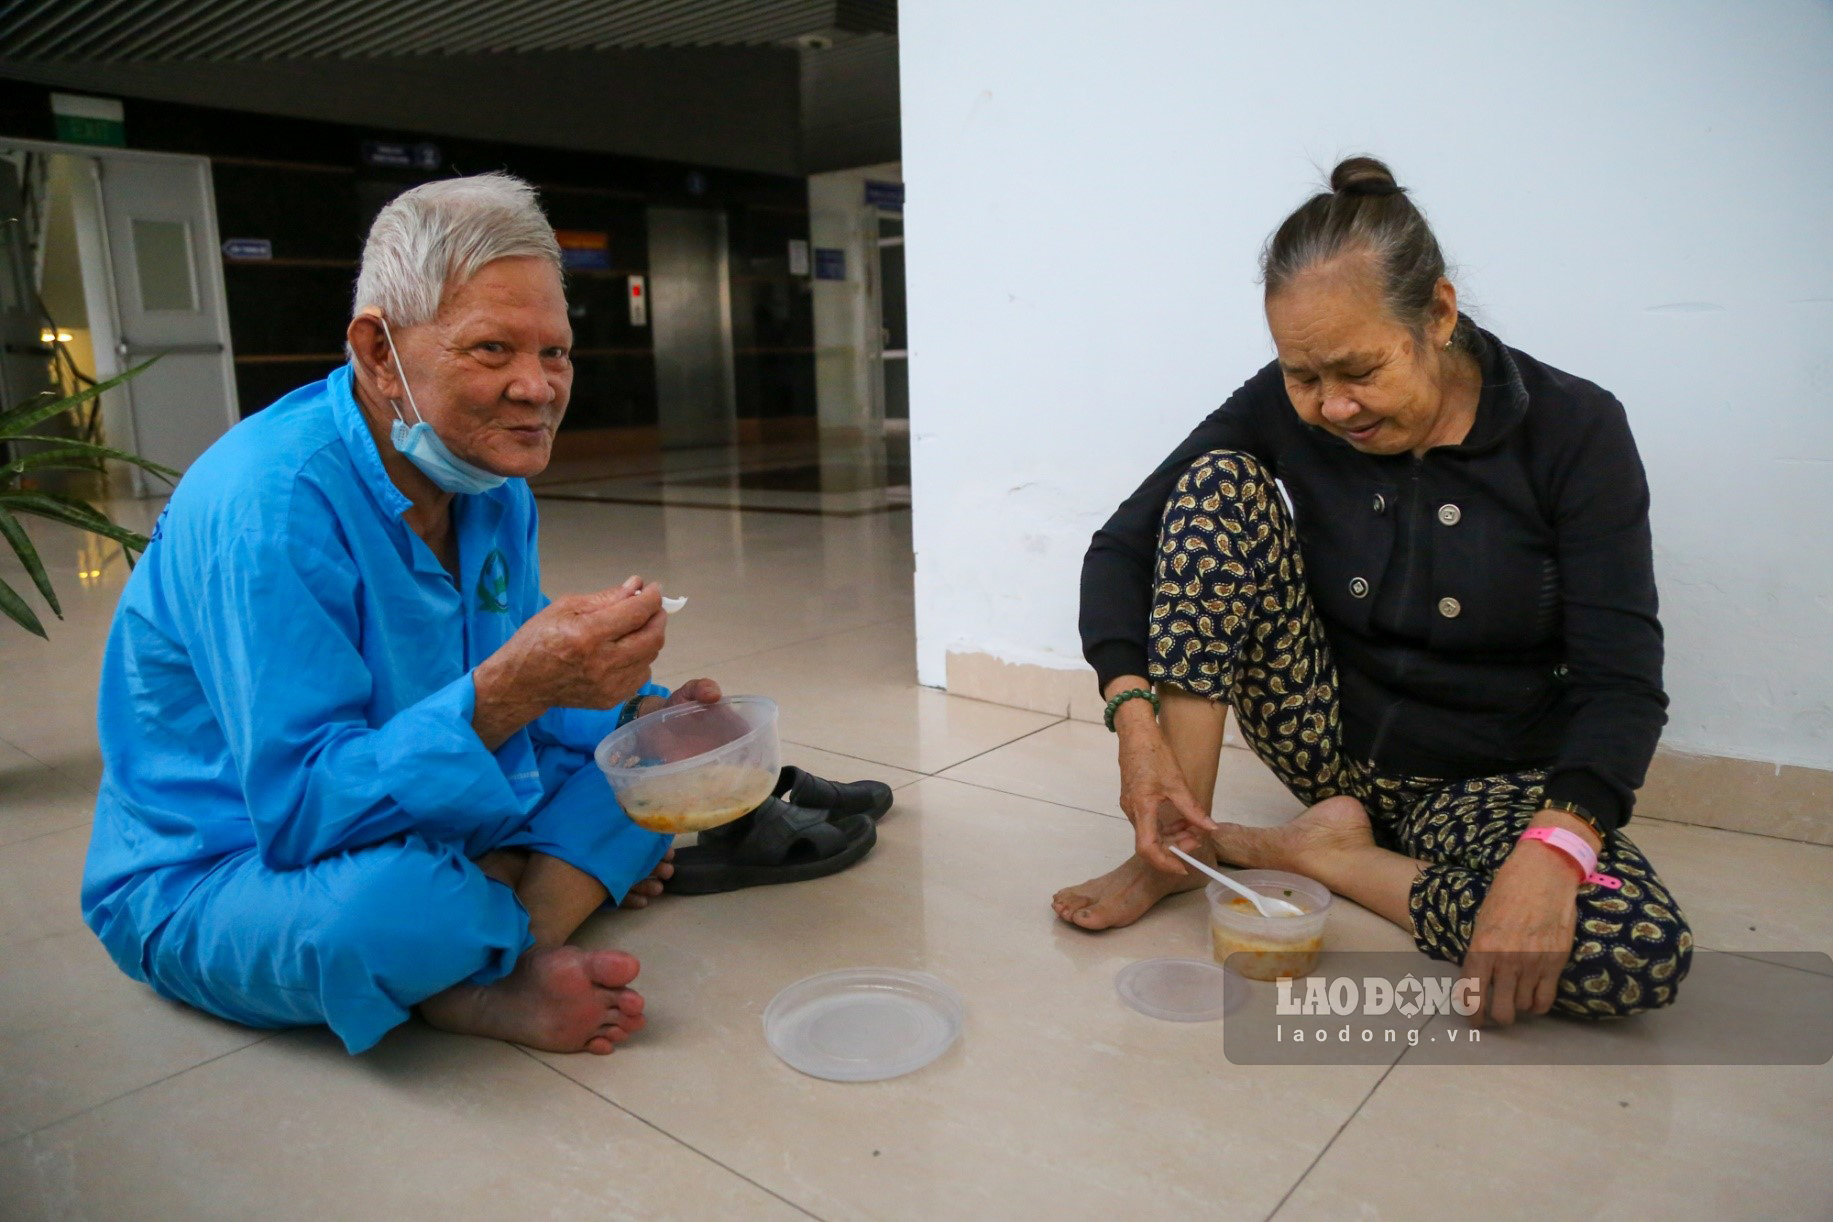 Còn đối với cặp vợ chồng ông Phạm Cường và Bà Mai Thị Bông đến từ Quảng Ngãi, những suất cháo này khiến họ cảm thấy ấm lòng khi phải điều trị bệnh ở nơi đất khách quê người.